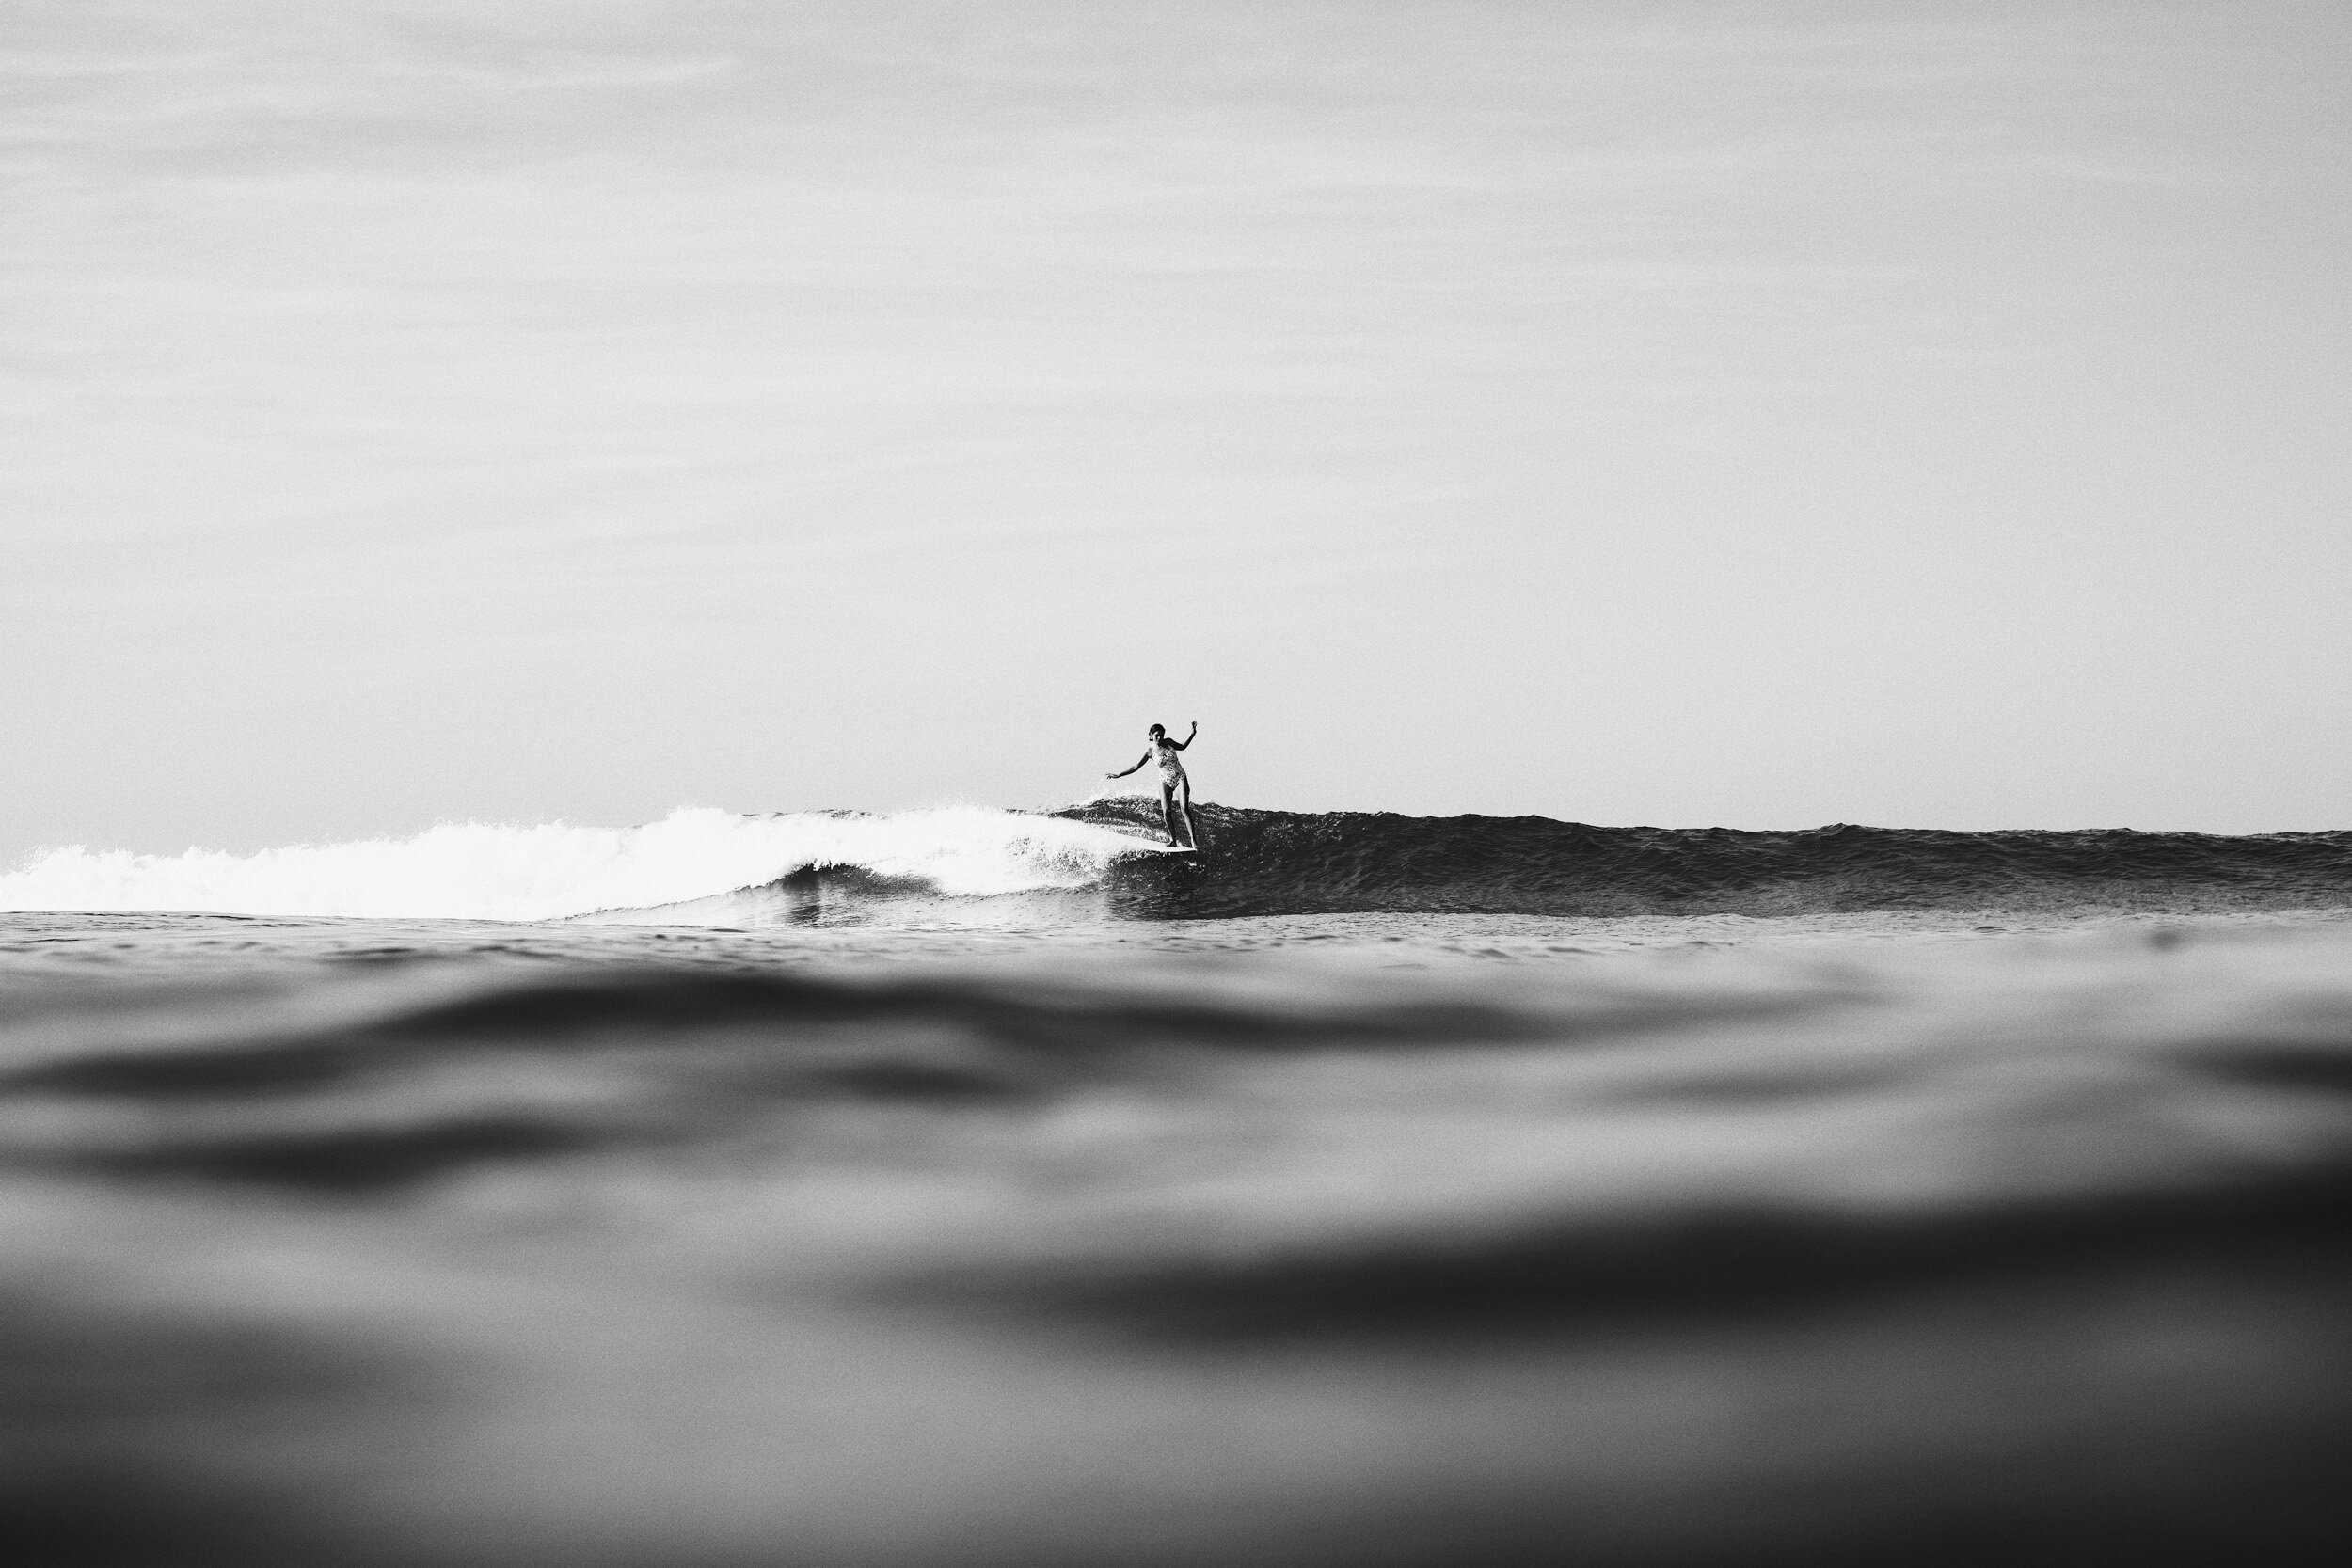 la-saladita-mexico-surf-longboard-fotografia-heiko-bothe-1532.jpg